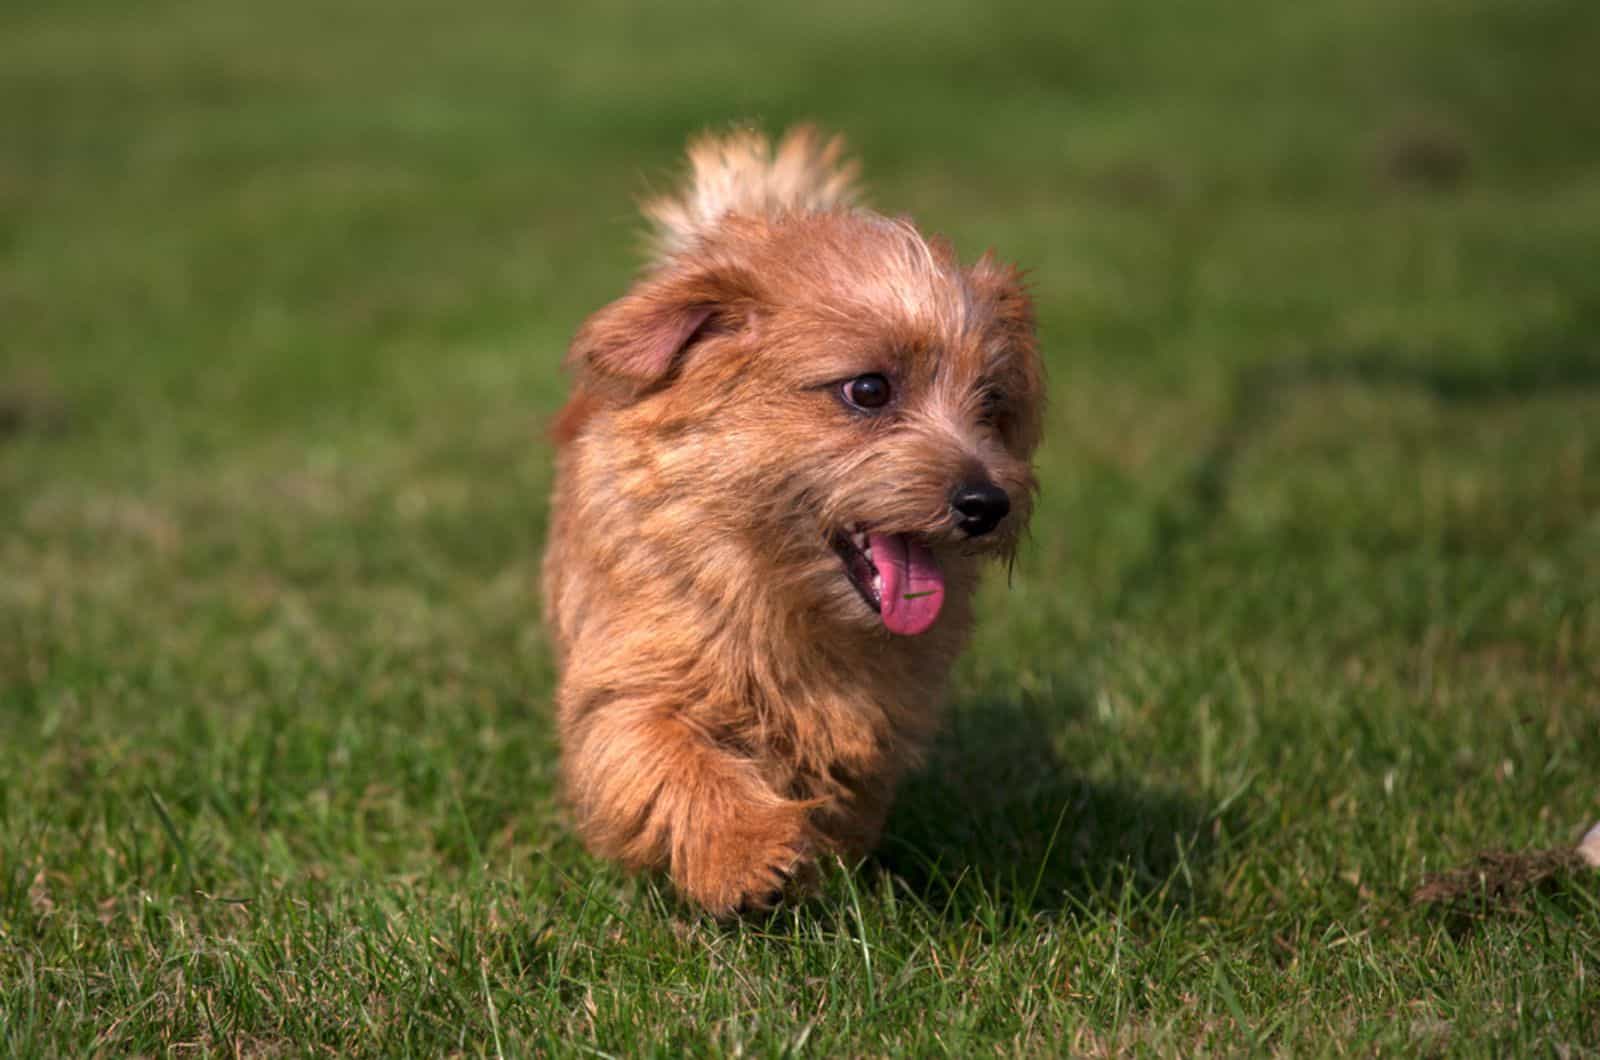 norfolk terrier puppy running on the lawn